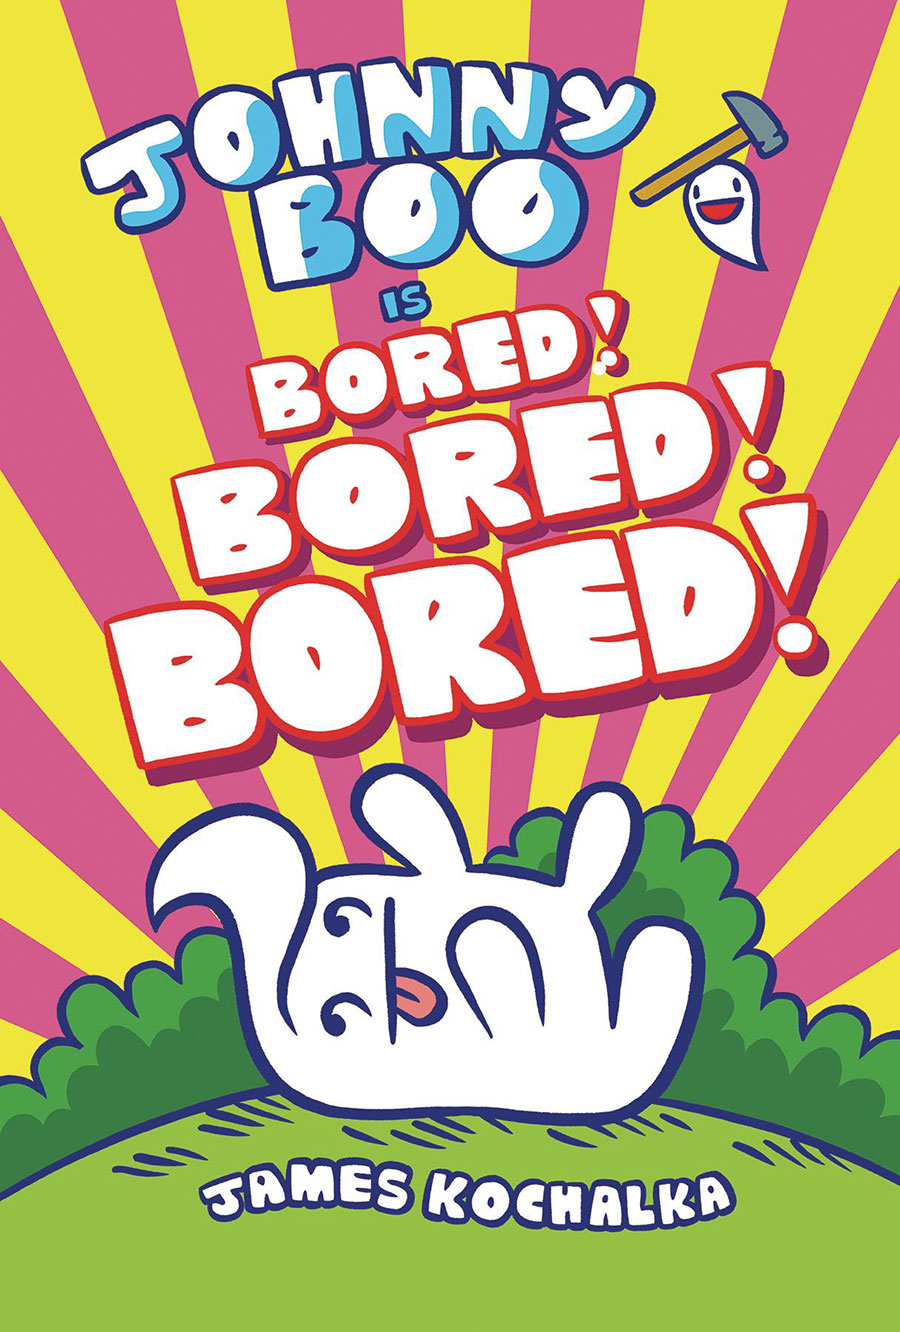 Johnny Boo Vol 14 Johnny Boo Is Bored Bored Bored HC